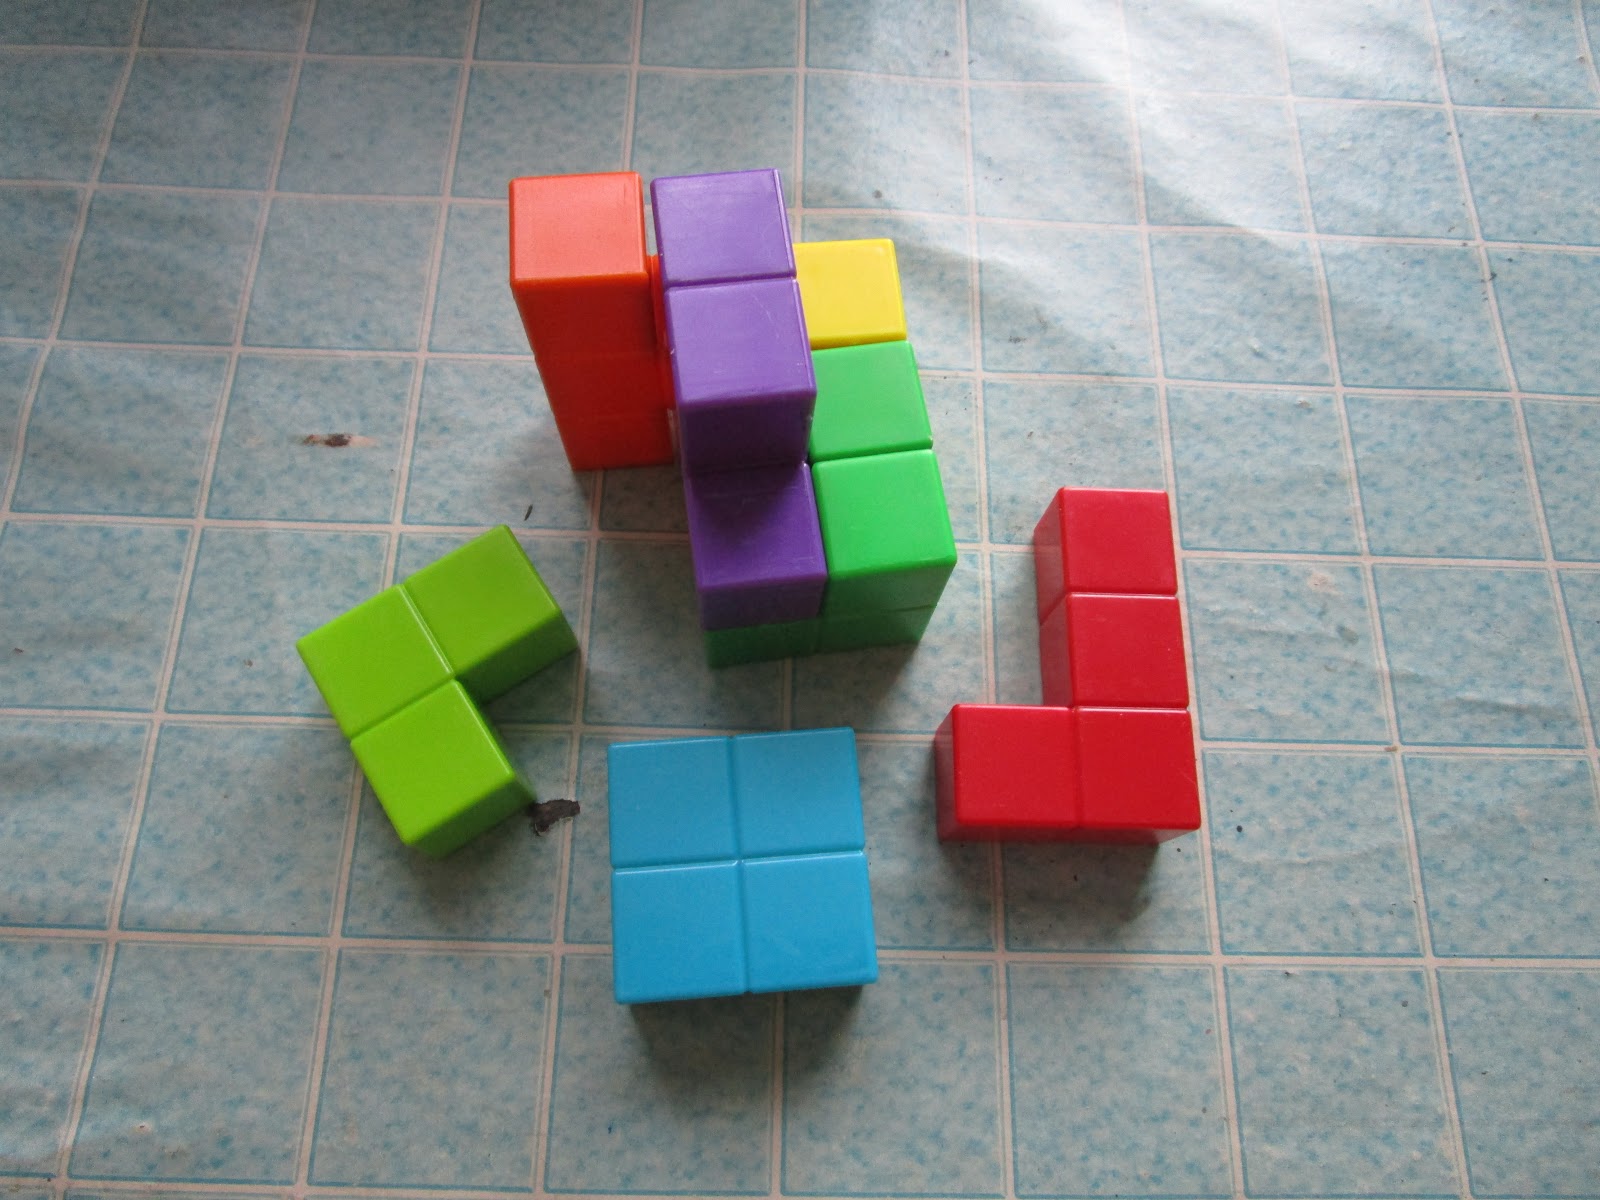 Найти игру разбери кубик. Разбери кубик. Разбери кубик игра. Разобрать кубик игра. 4на4 разобранный кубик Рубика.